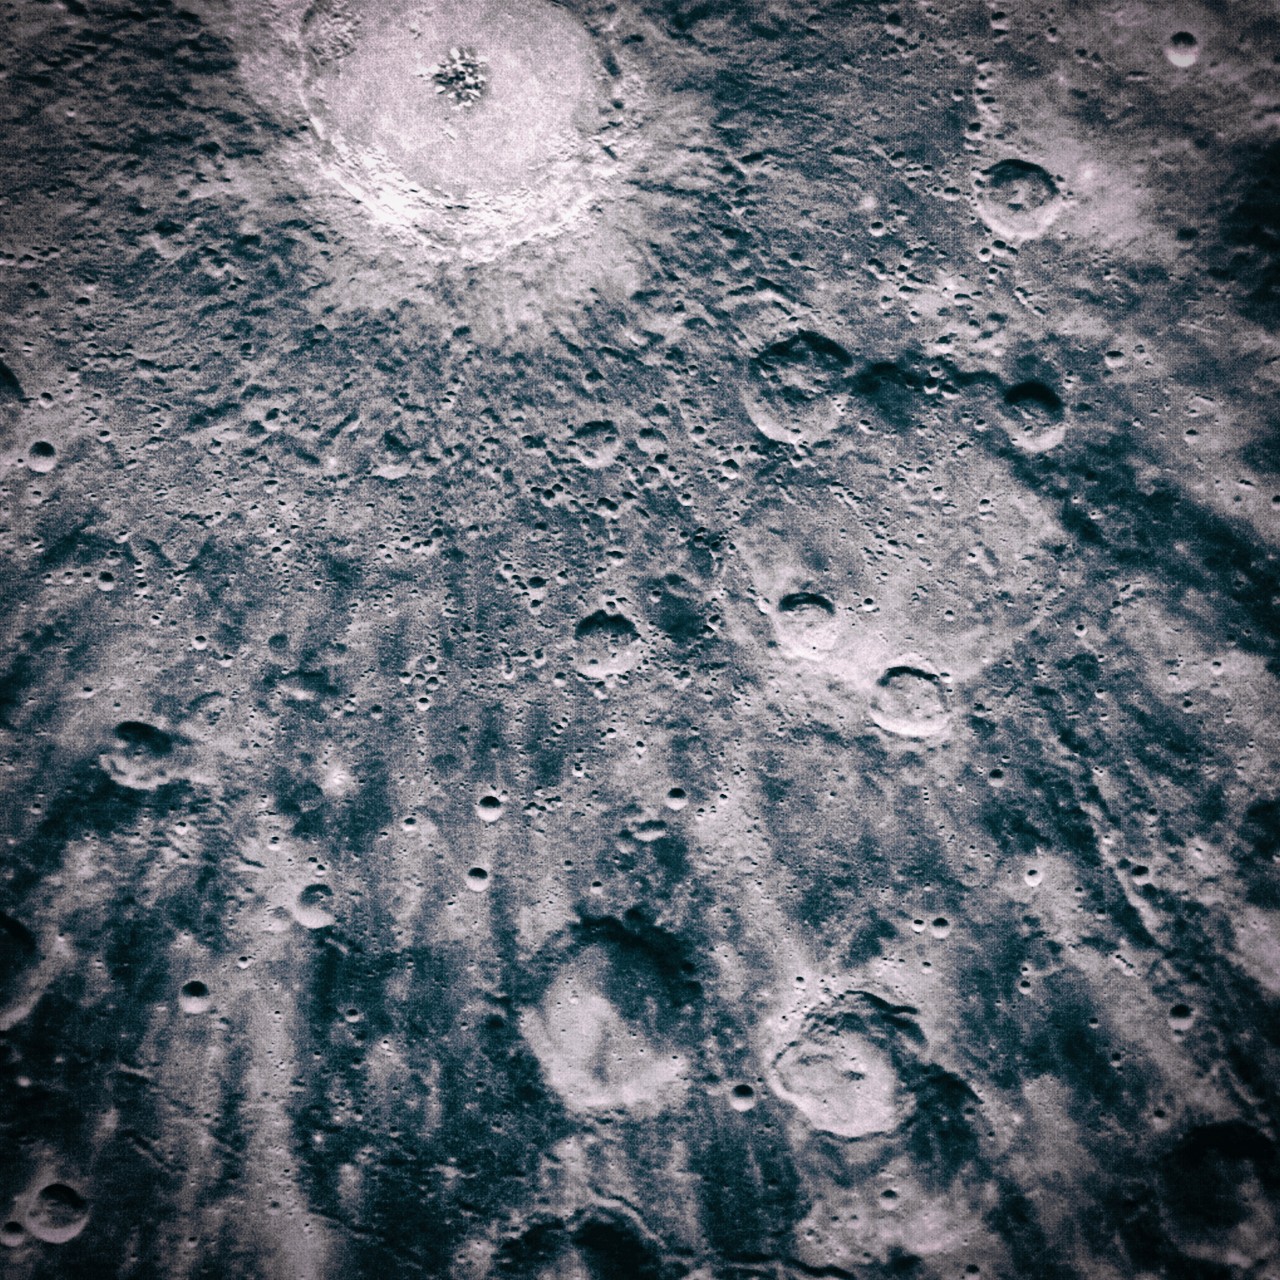 月球表面附近的哥白尼陨石坑。